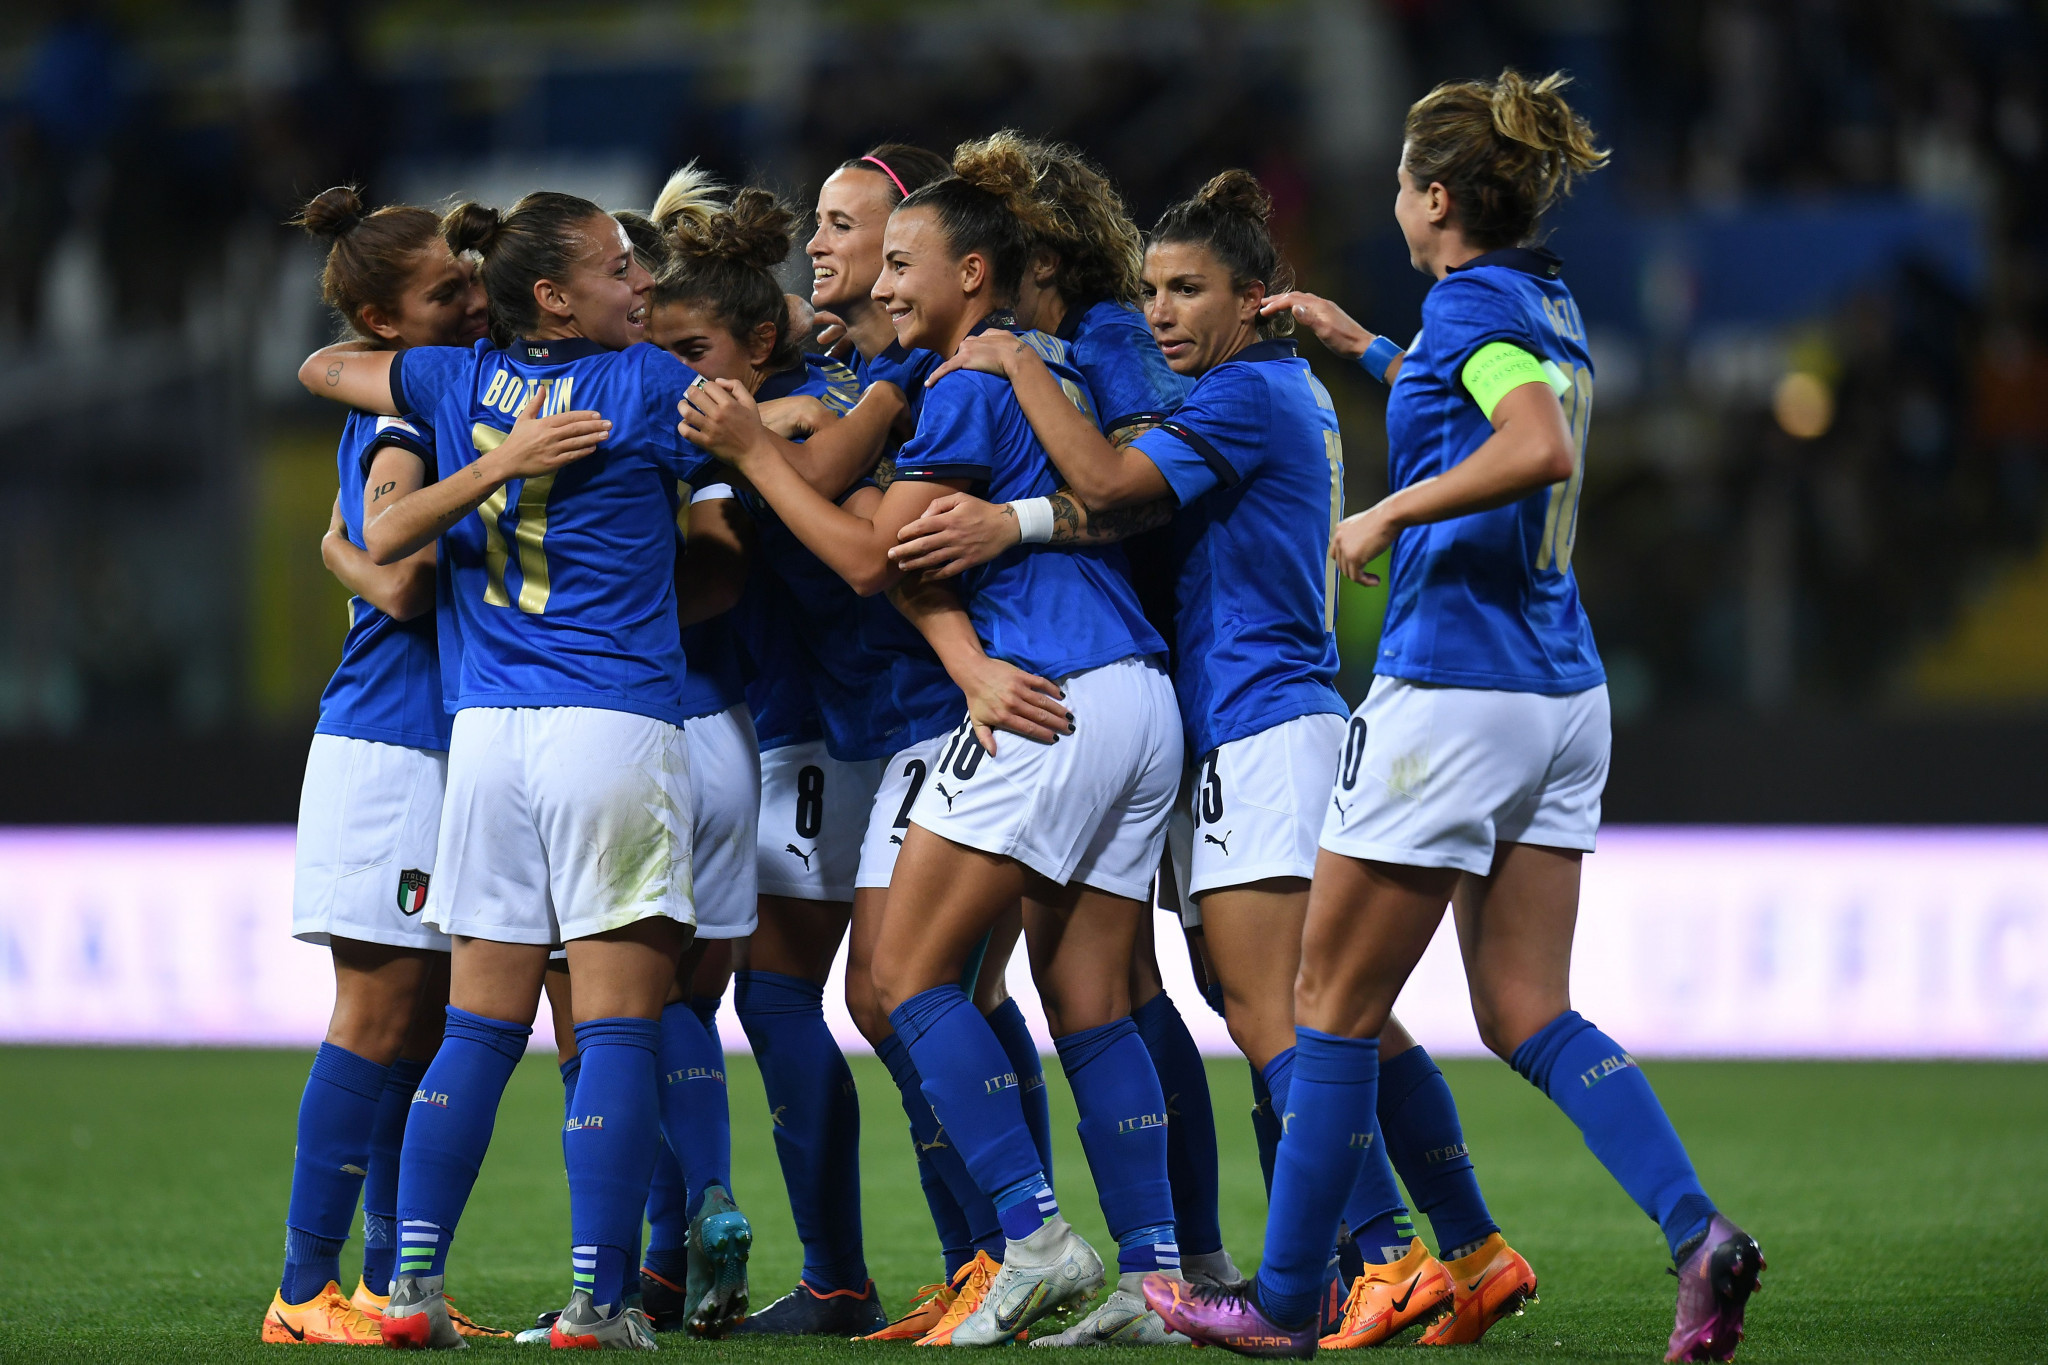 Xero named as latest FIFA women’s football partner 